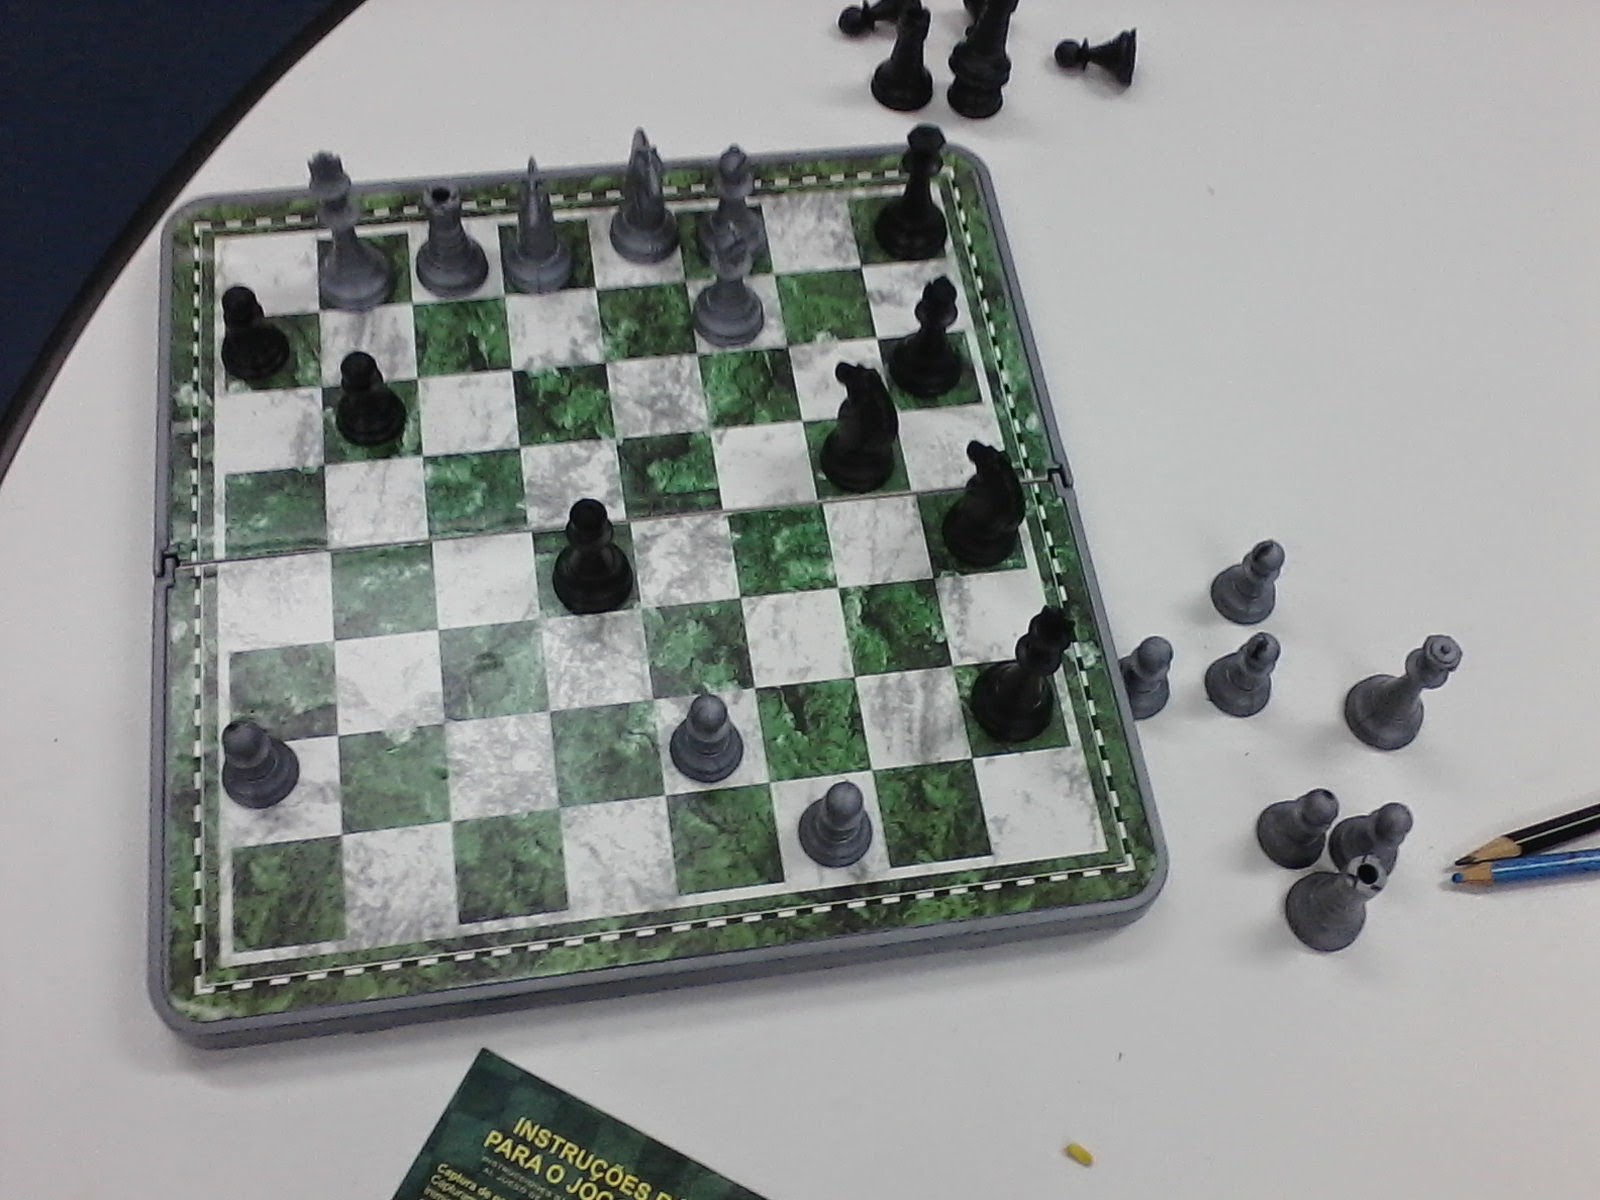 A utilização do xadrez como recurso metodológico para o ensino da